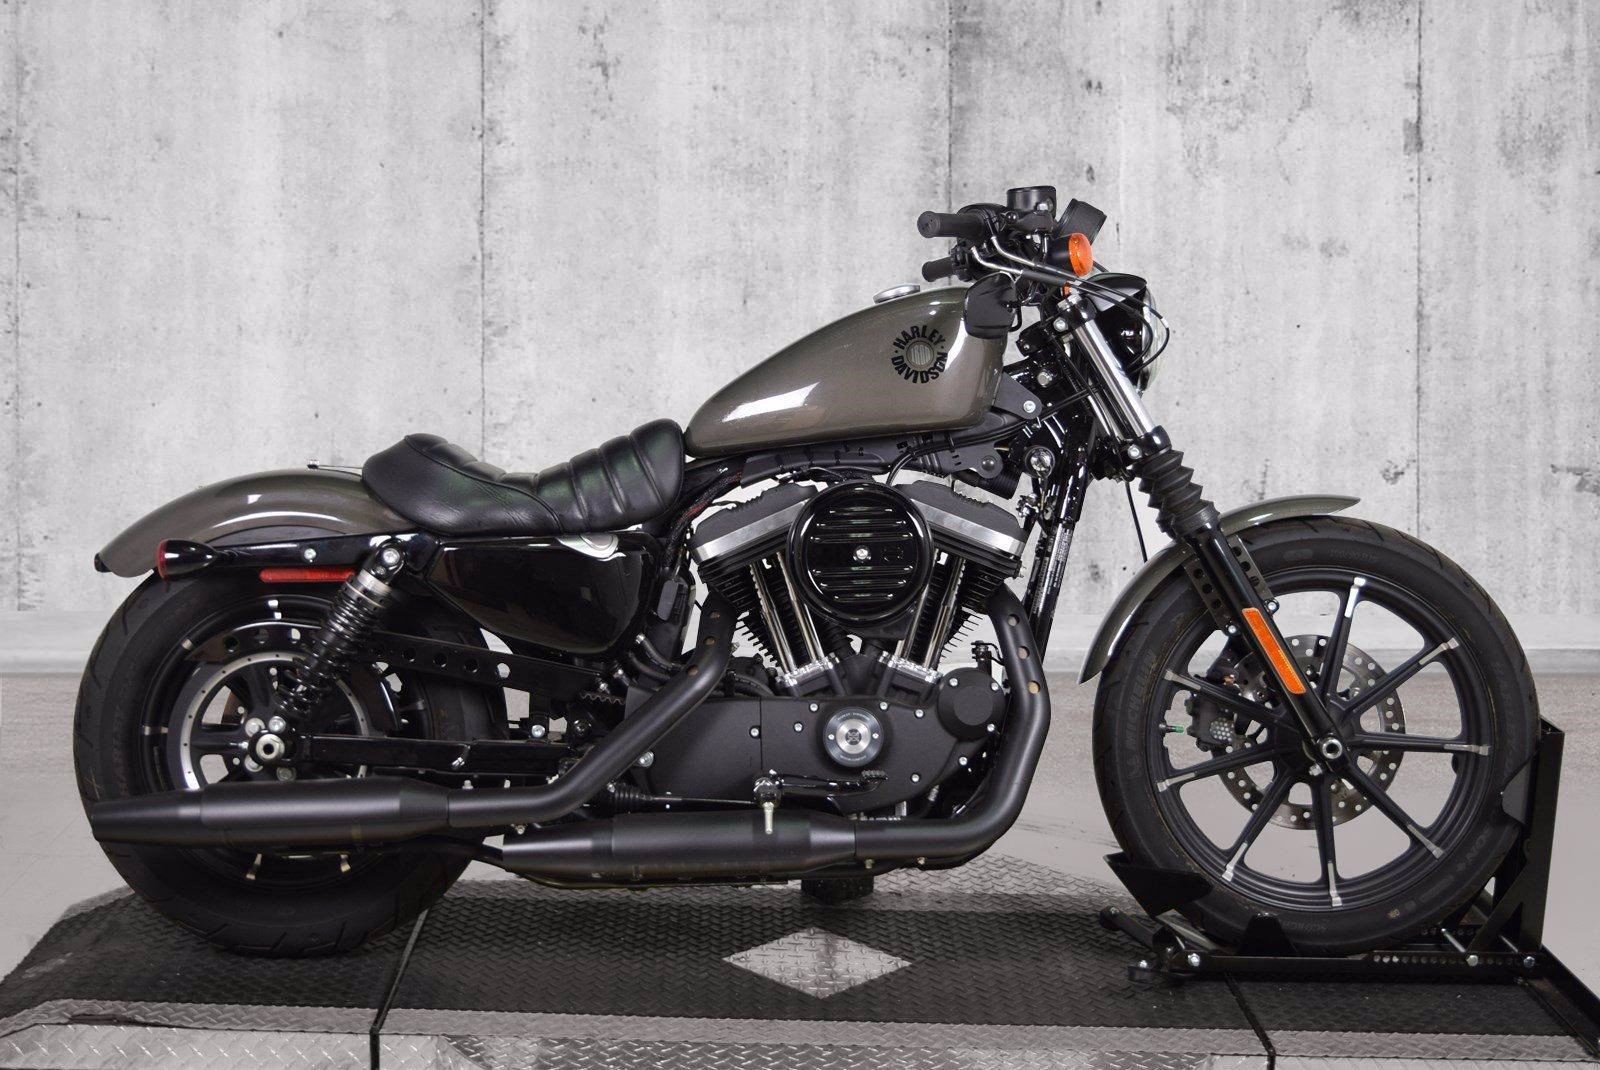 Harley Davidson 2019 Iron 883 Price Inspirasi Terpopuler